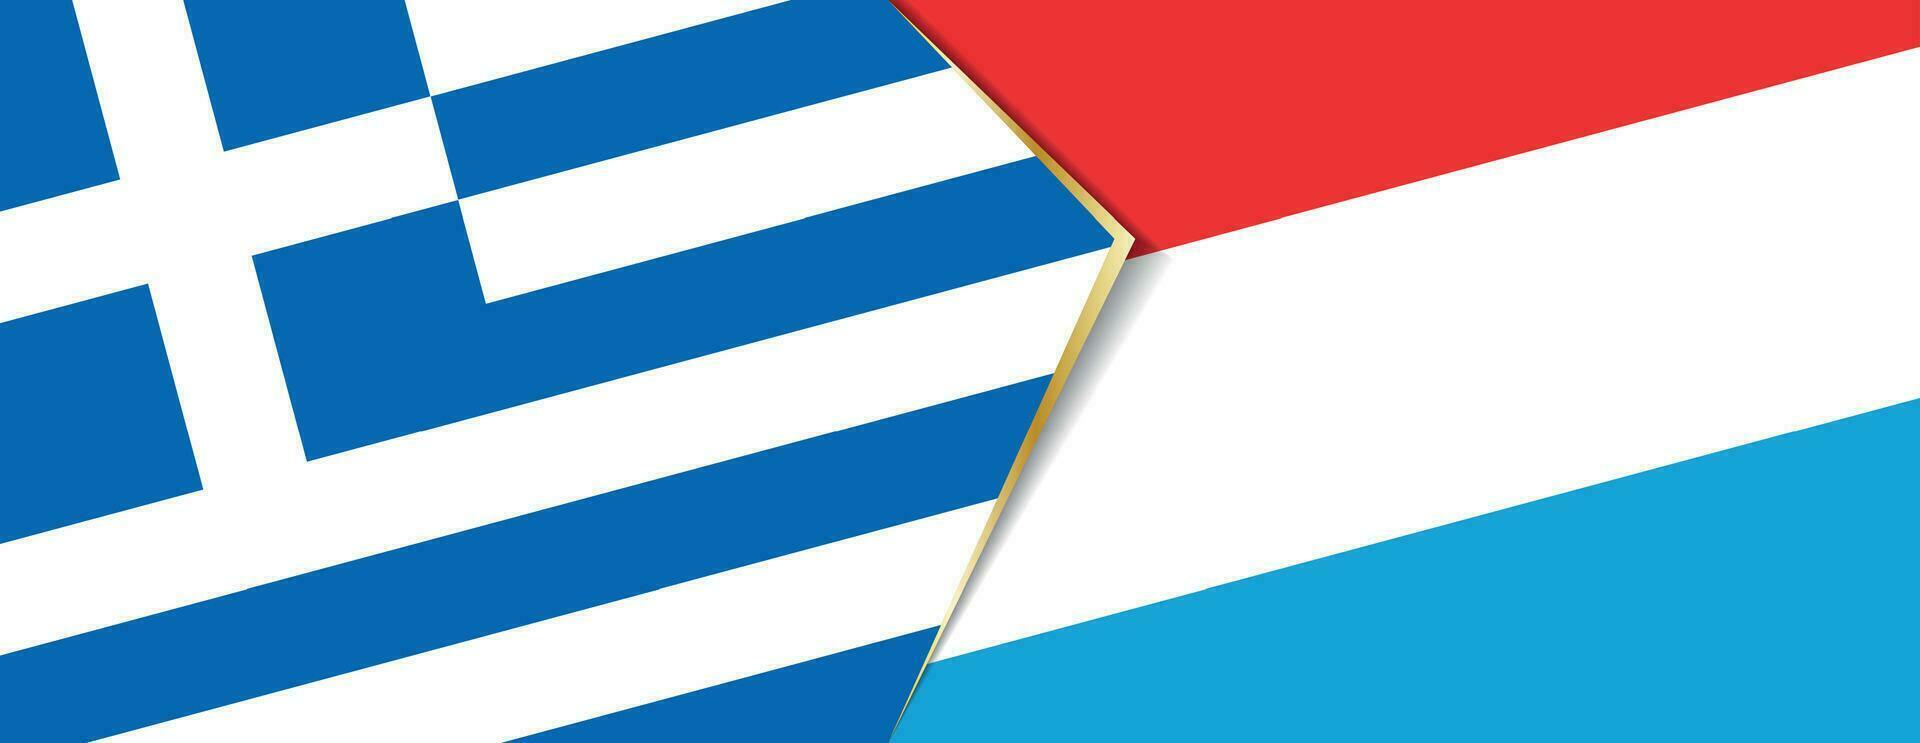 grekland och luxemburg flaggor, två vektor flaggor.